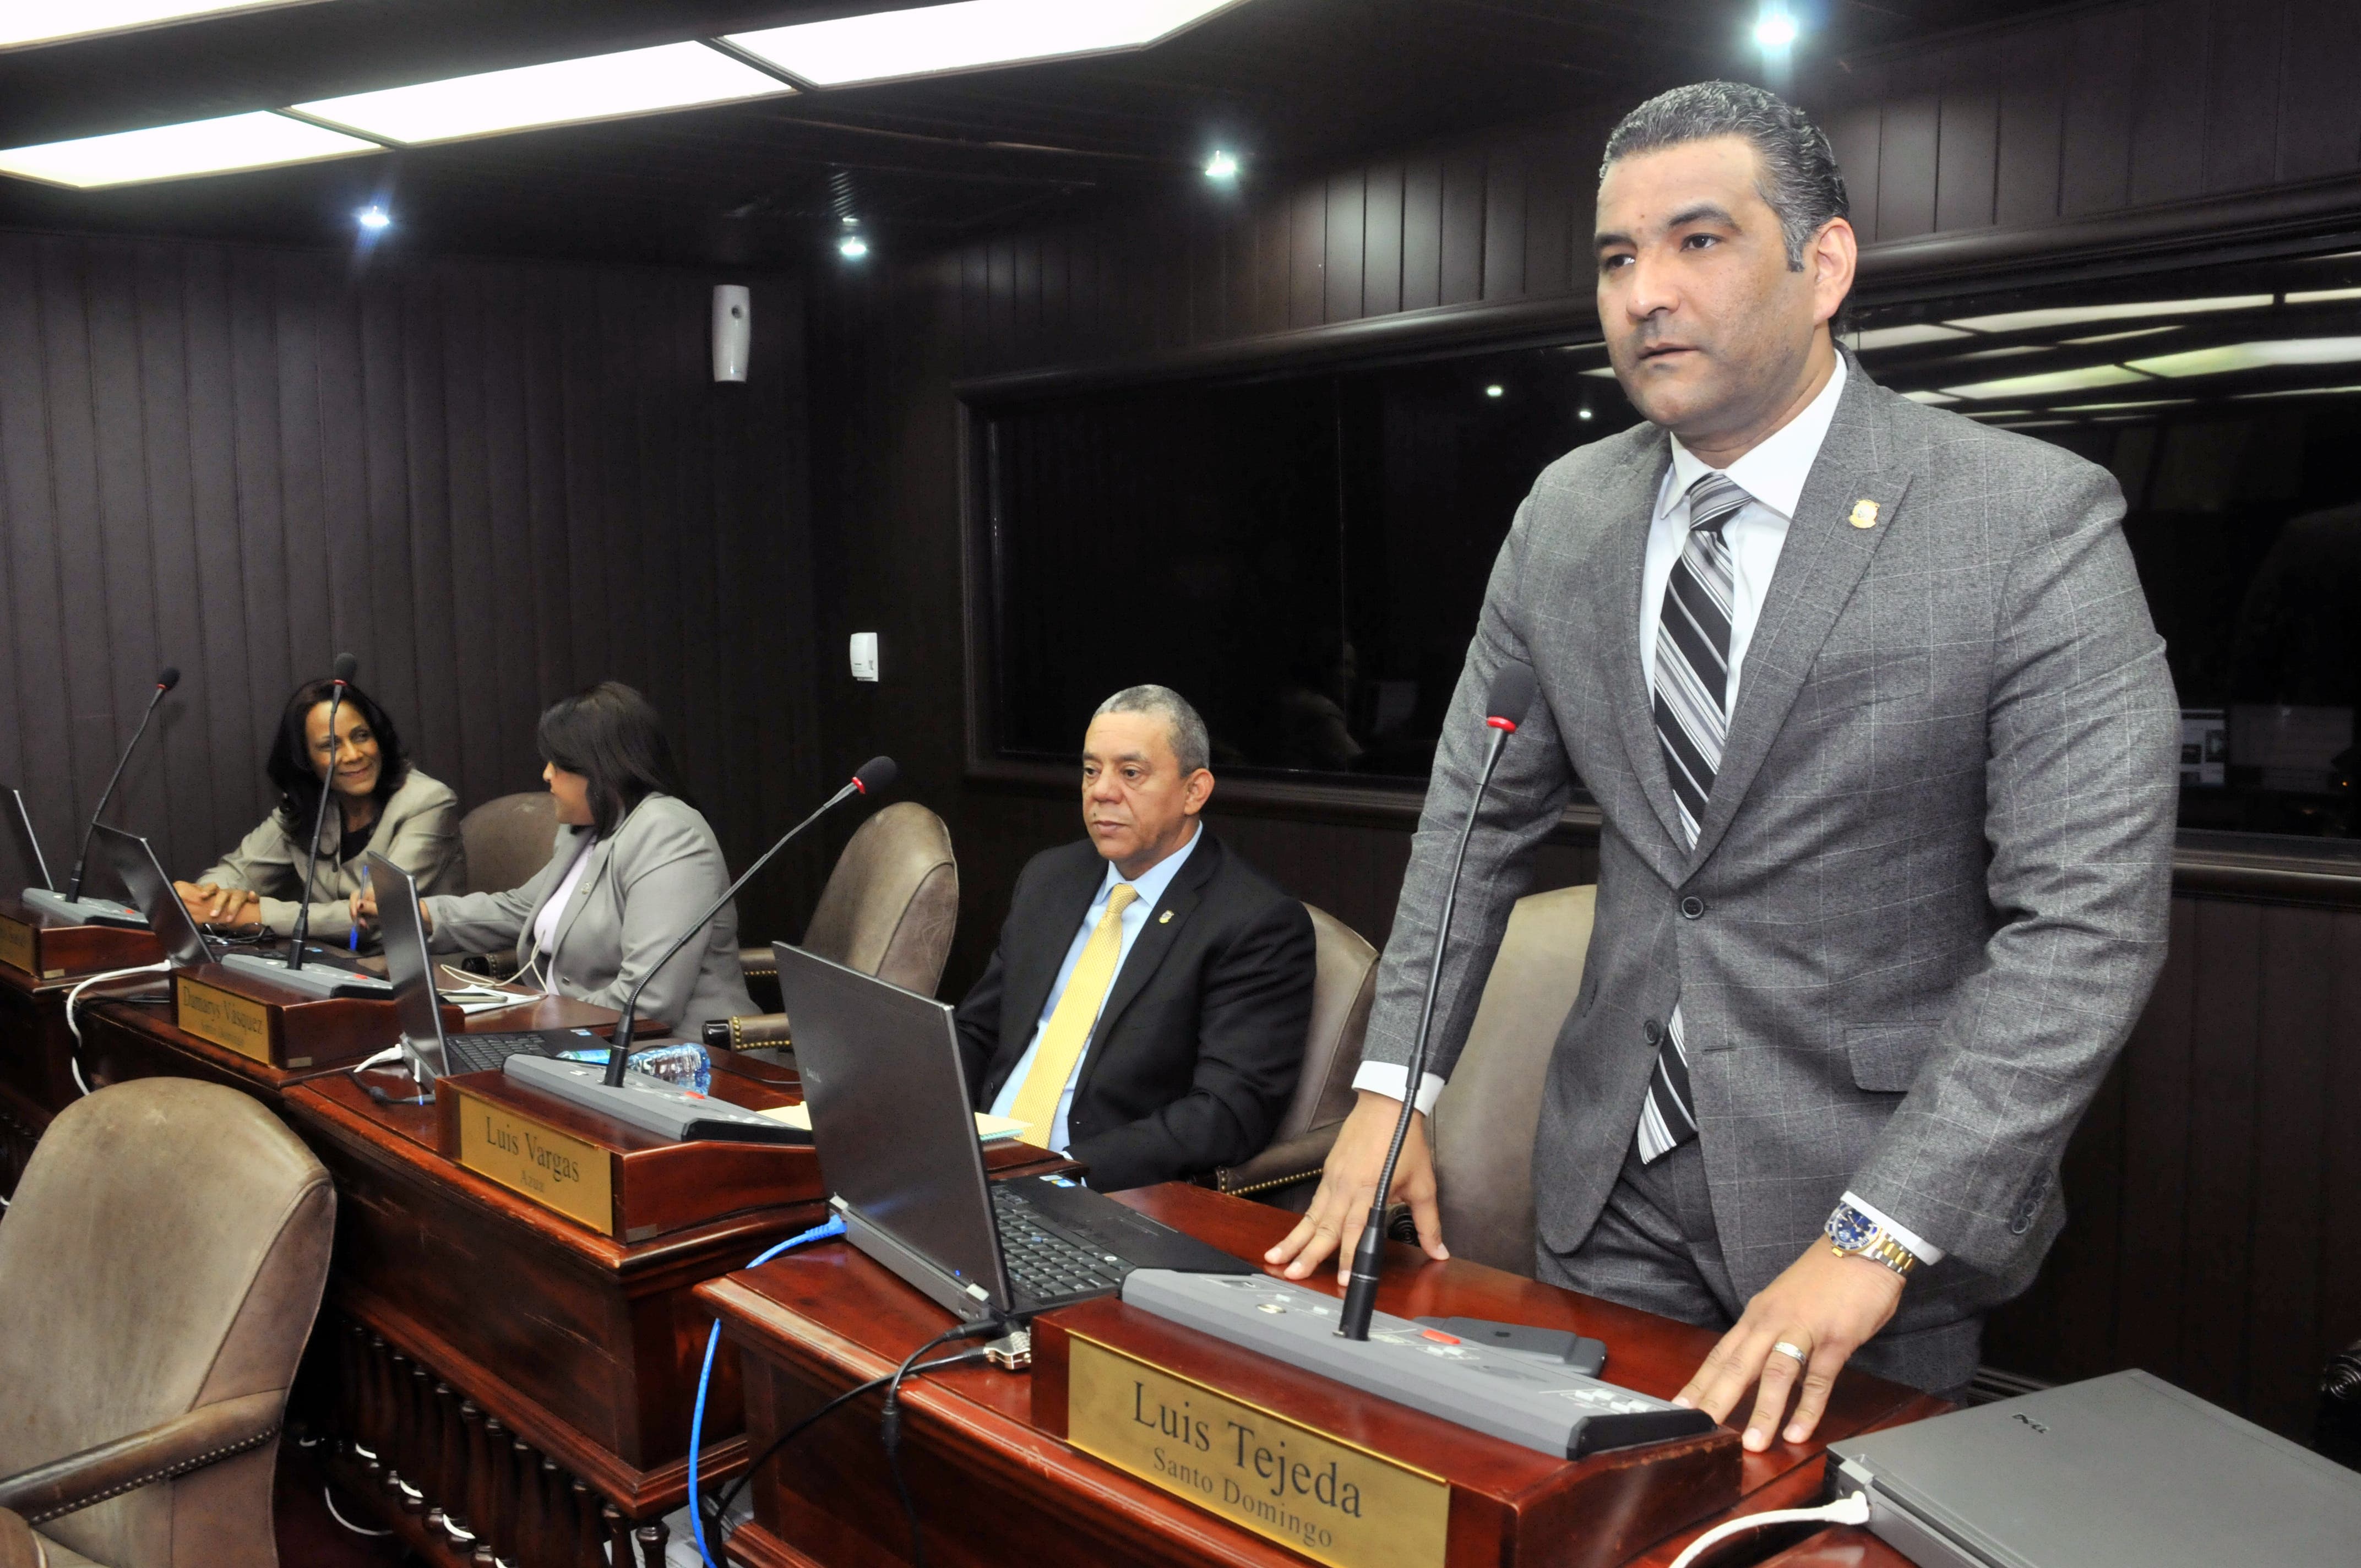 Luis Alberto Tejeda asegura Danilo se ha comprometido en lucha contra corrupción